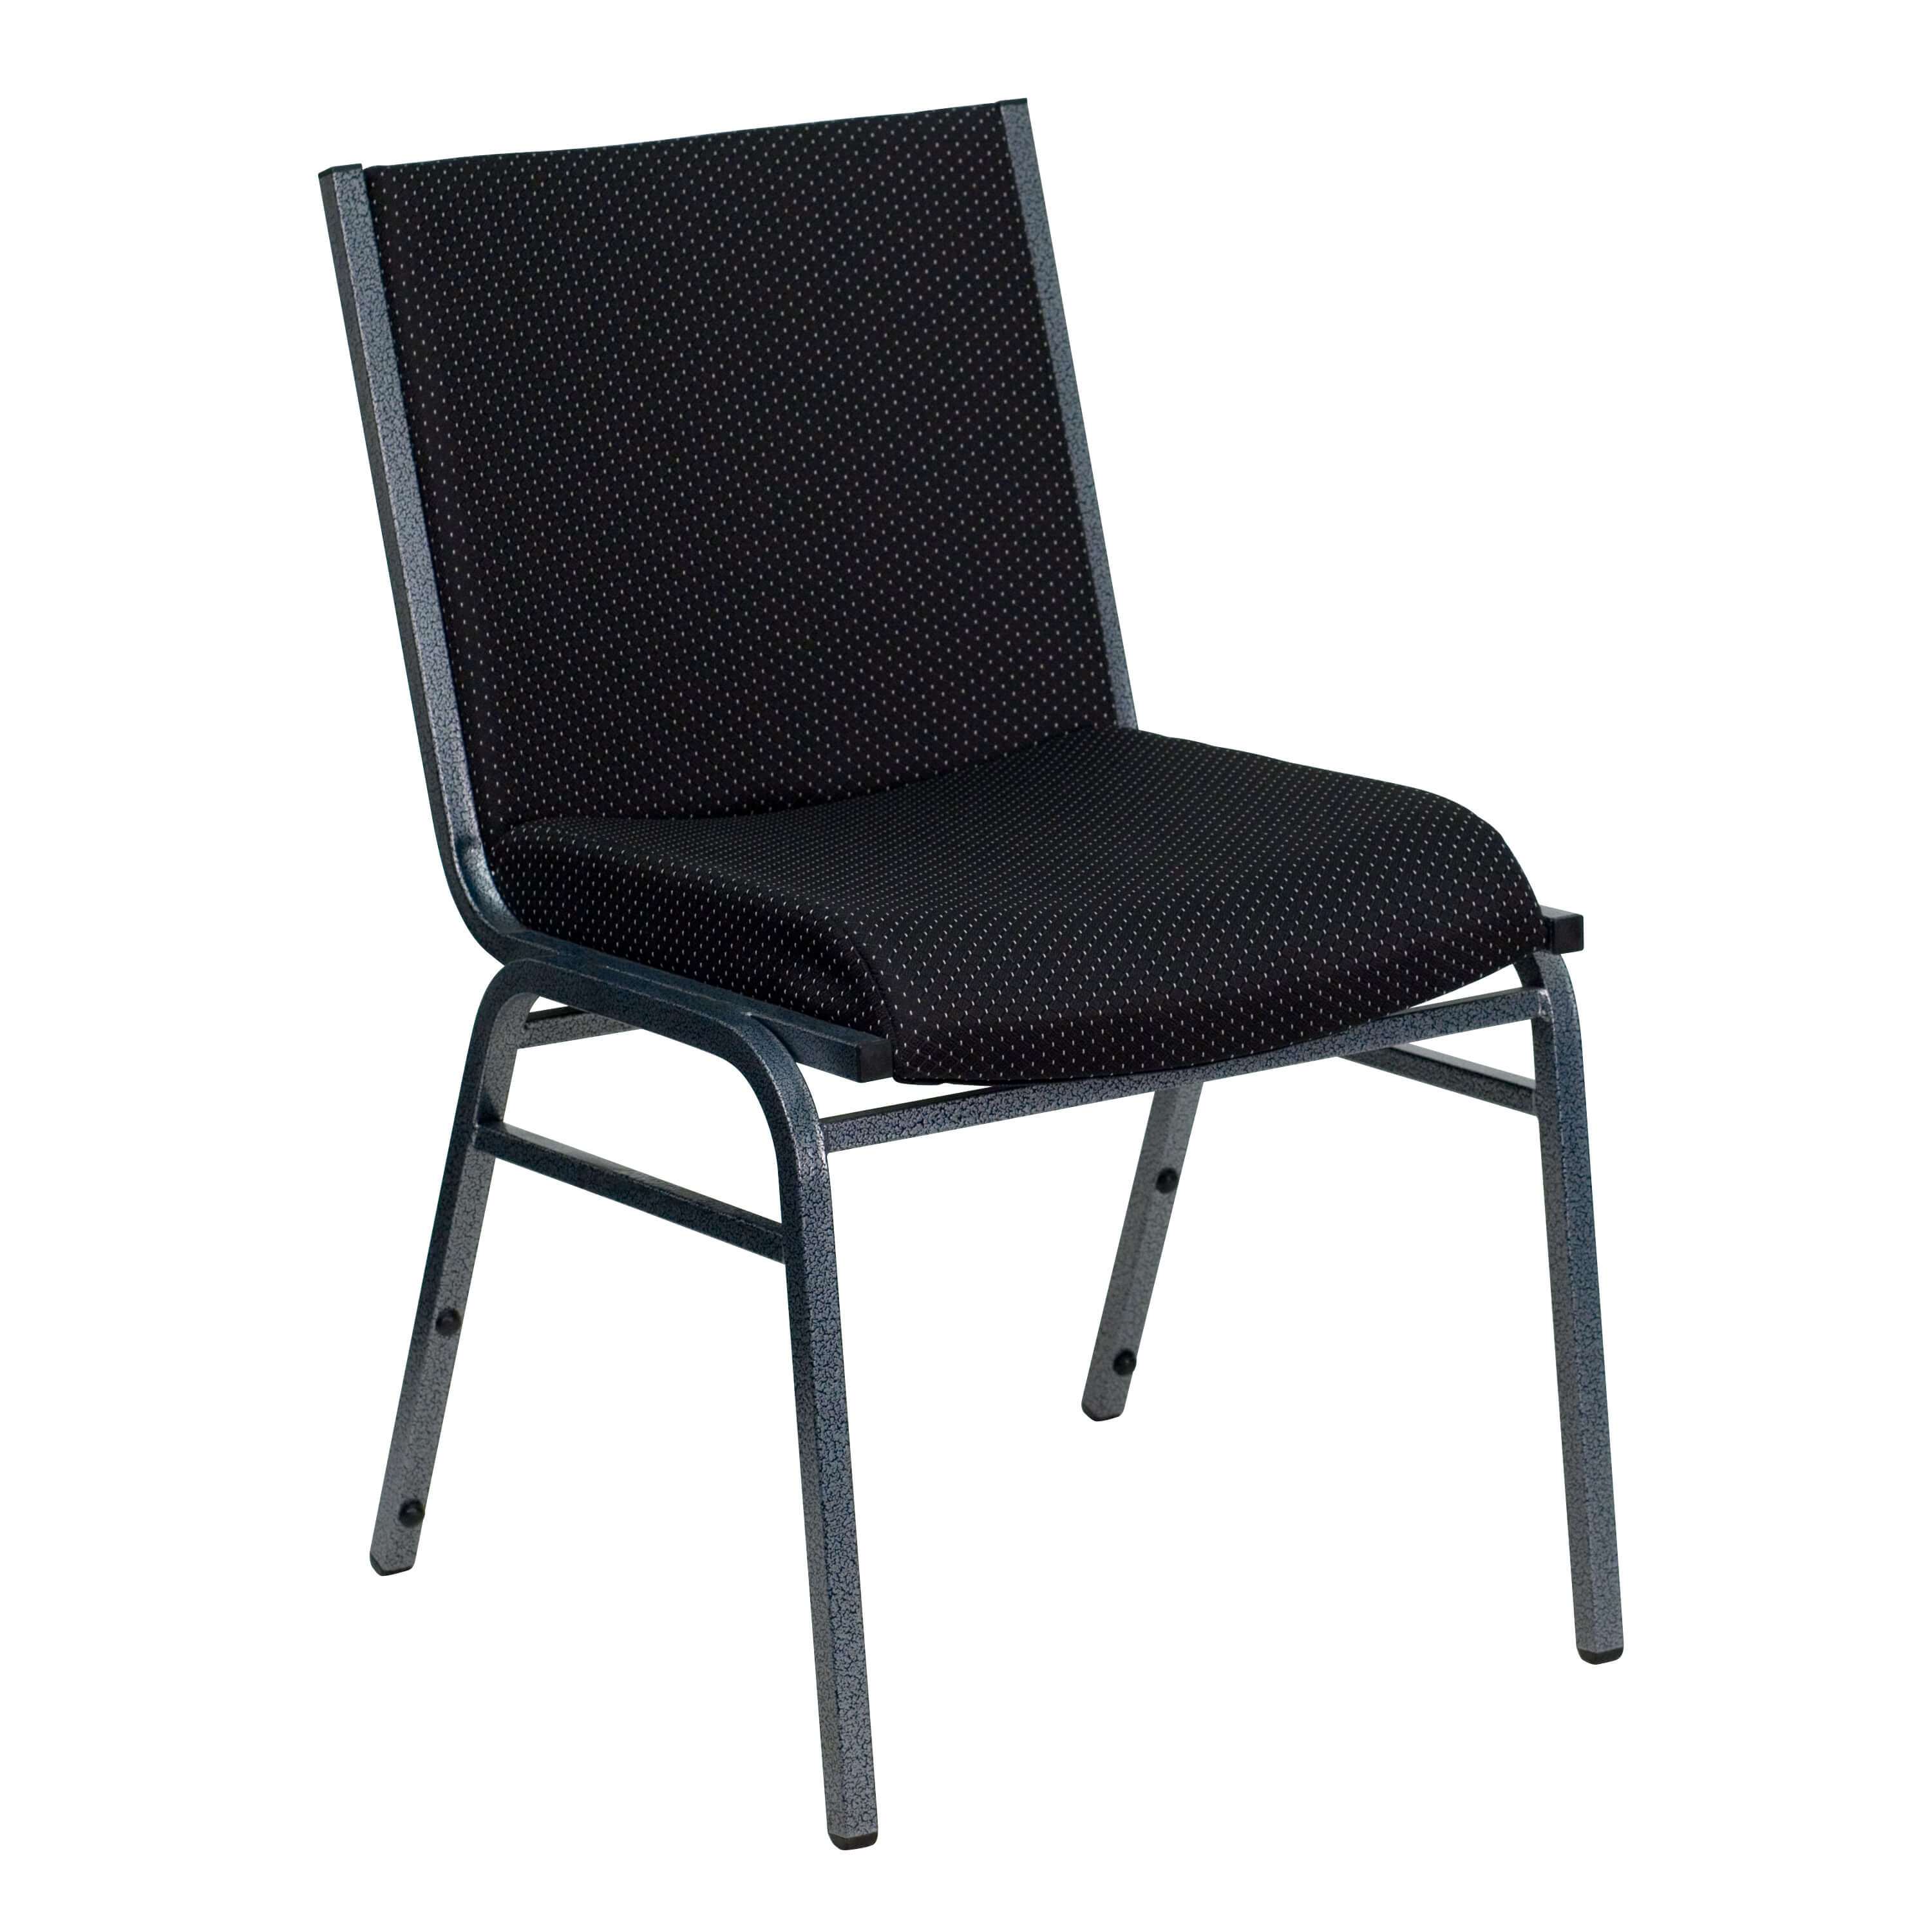 Stackable chairs CUB XU 60153 BK GG FLA